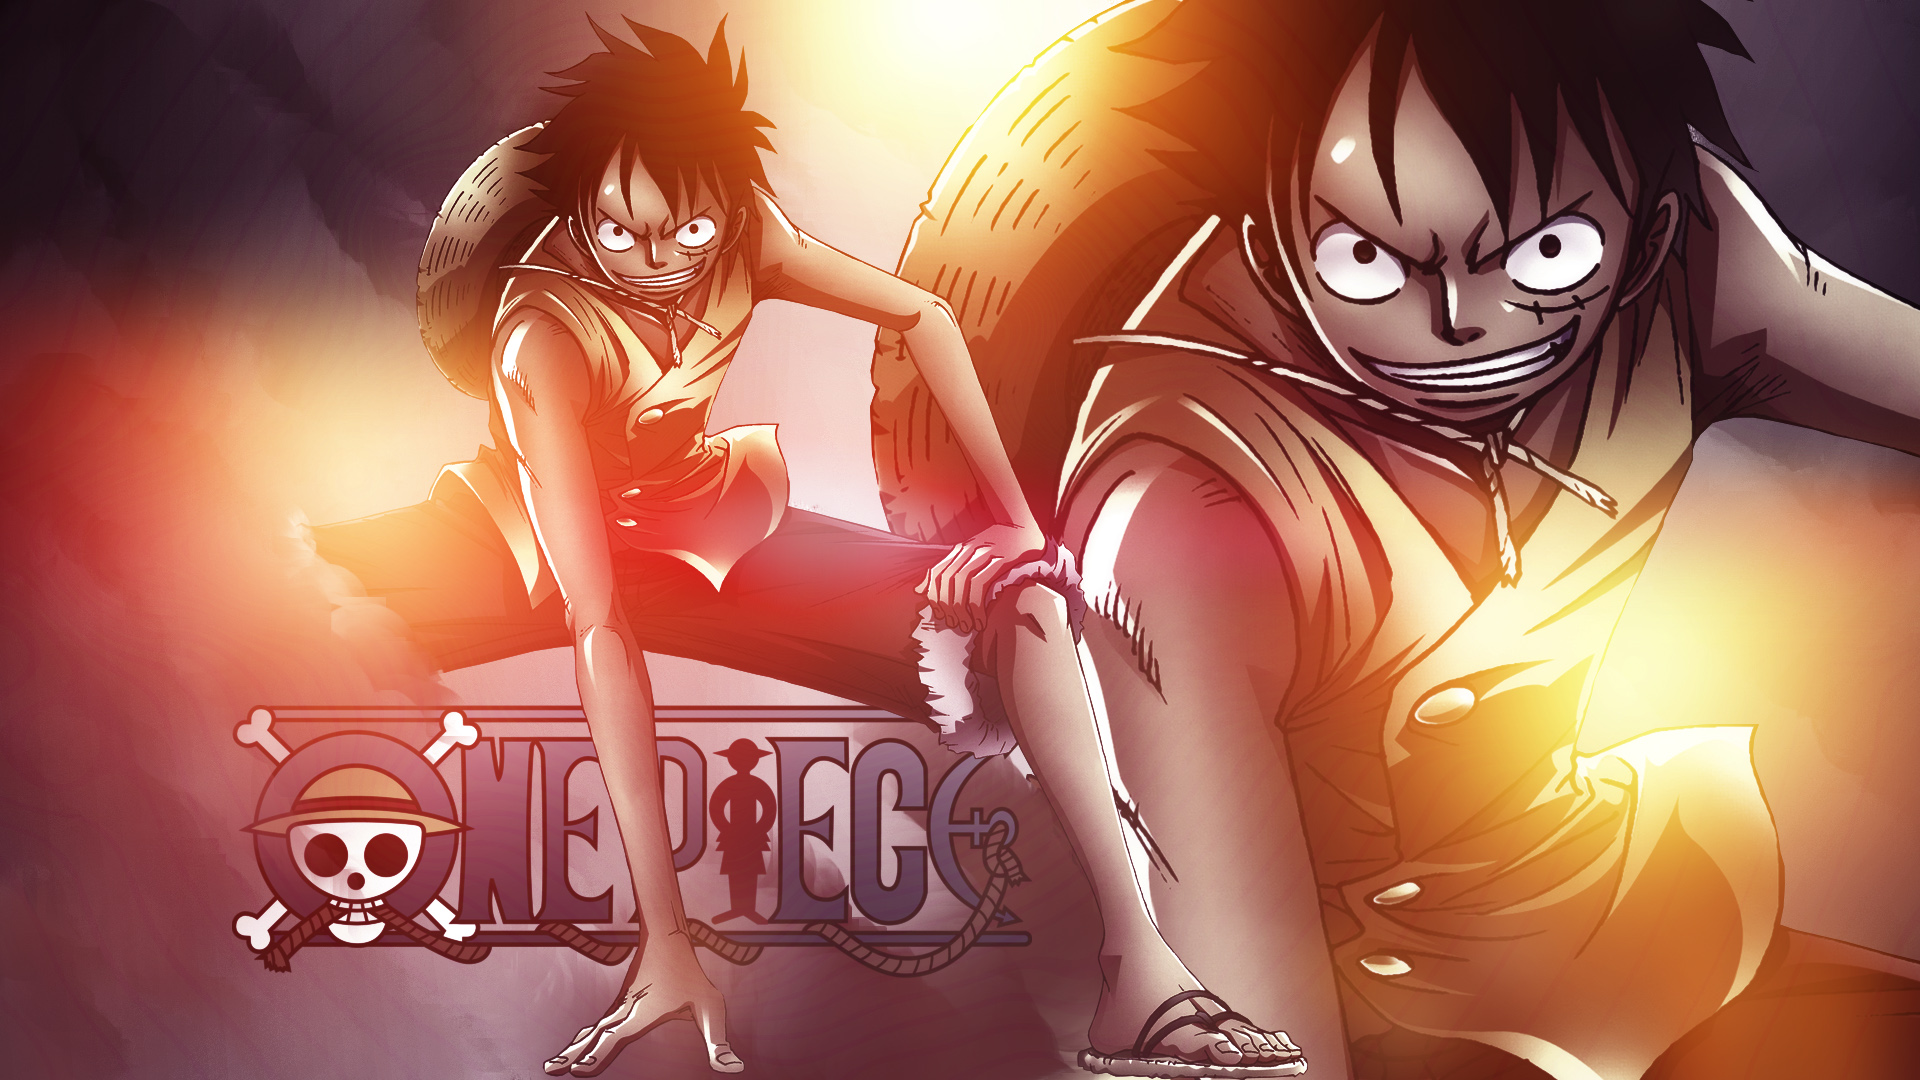 Hình nền Luffy One Piece chất lượng cao đang chờ đón bạn! Bạn sẽ không thể rời mắt khỏi hình ảnh đẹp lung linh này của chúng tôi đâu.